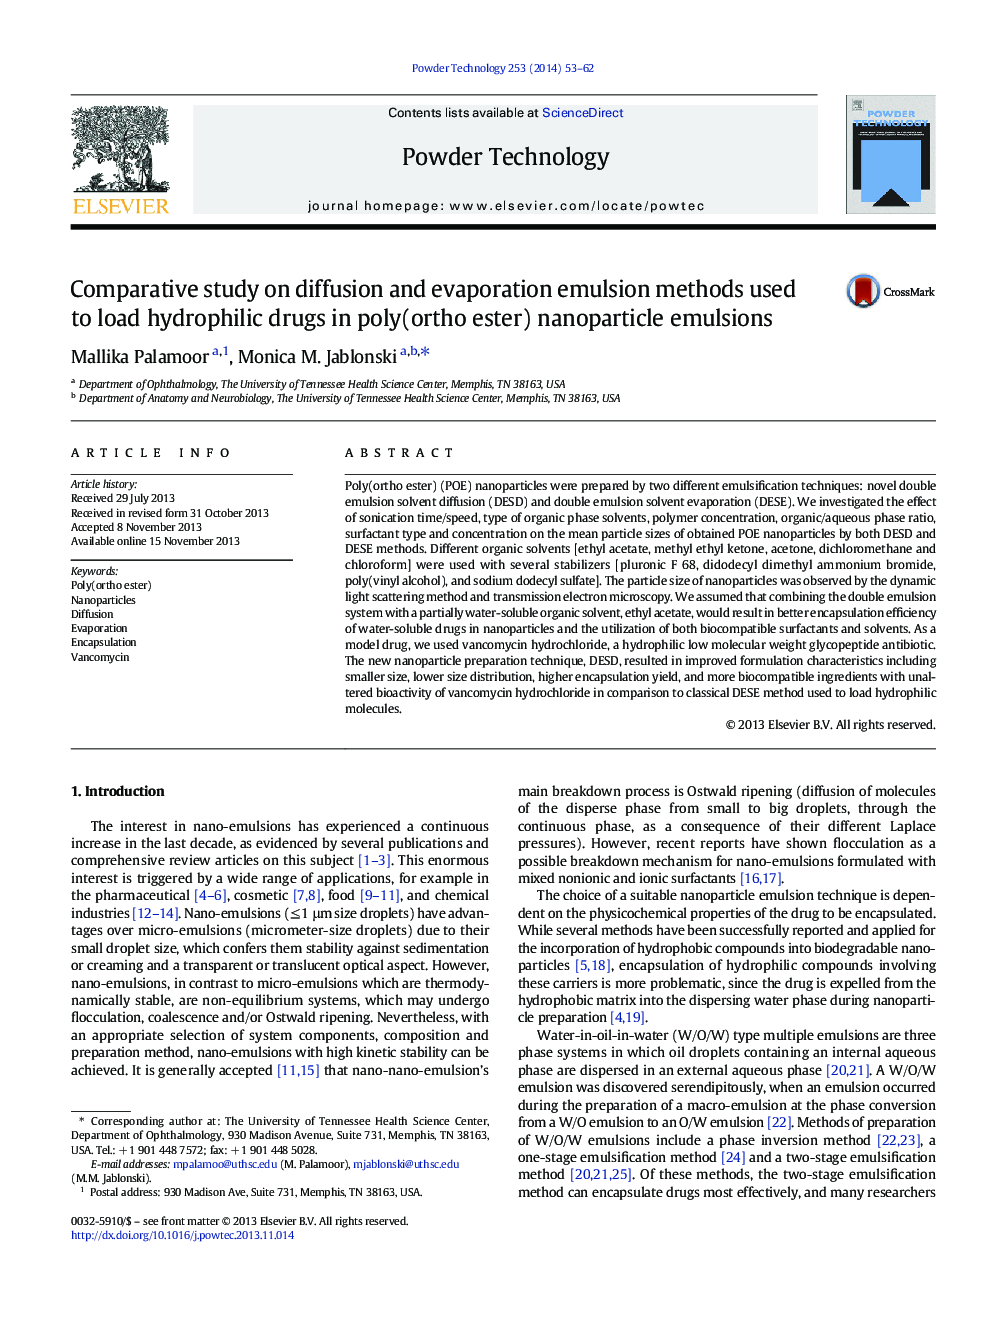 بررسی مقایسه ای در مورد روش های امولسیون انتشار و تبخیر استفاده شده برای بارگیری داروهای هیدروفیل در امولسیون های نانوذره پلی (اورتواستر) 